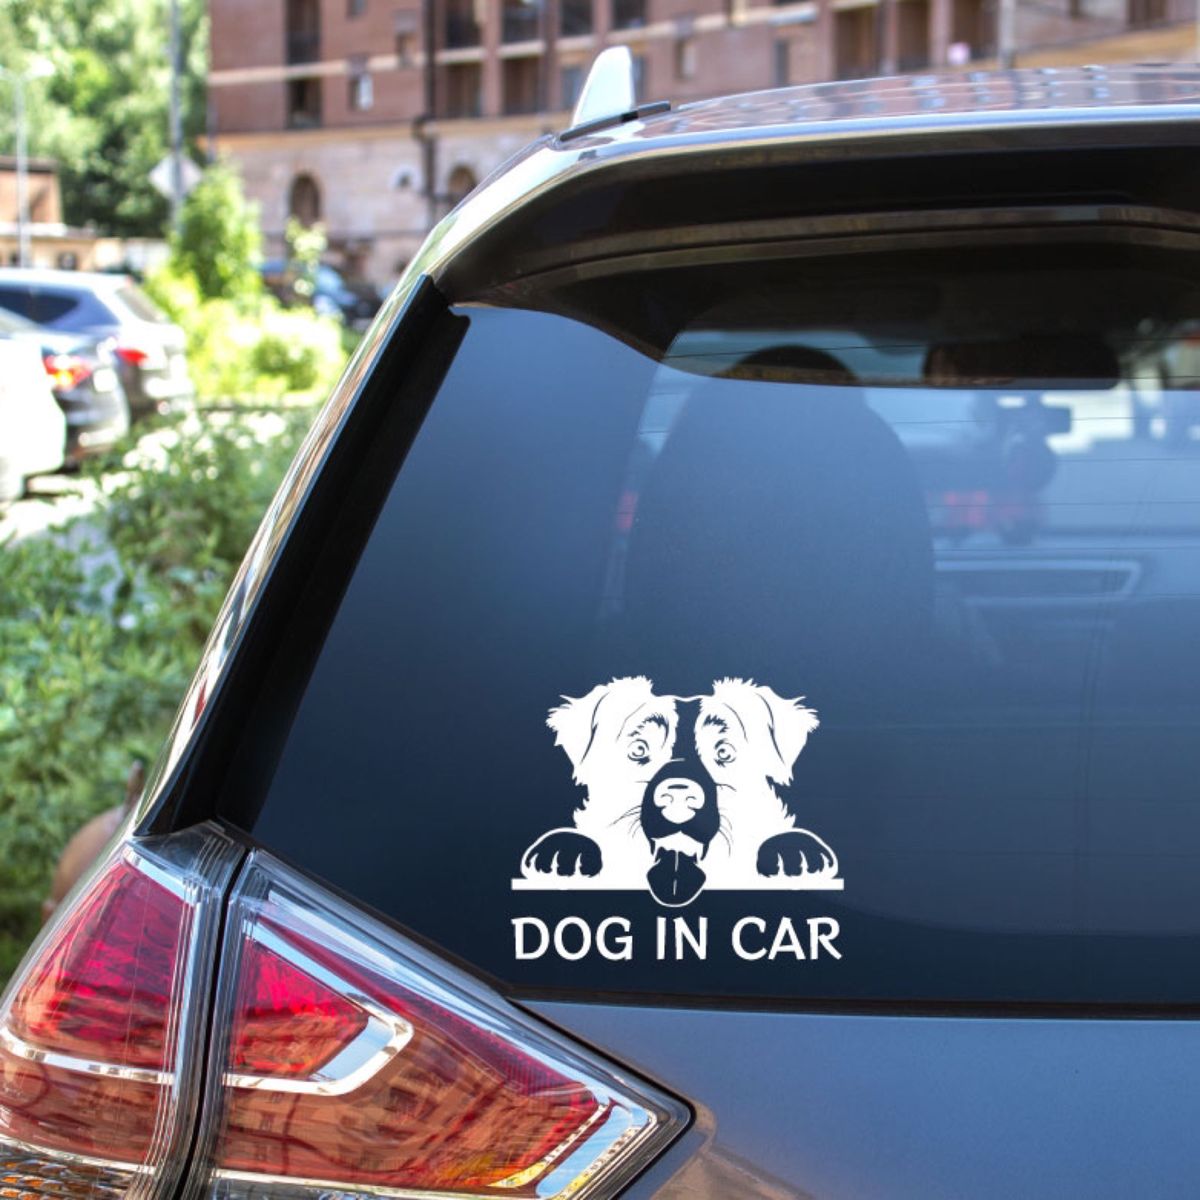 カッティングステッカー DOG IN CAR ボーダーコリー 白